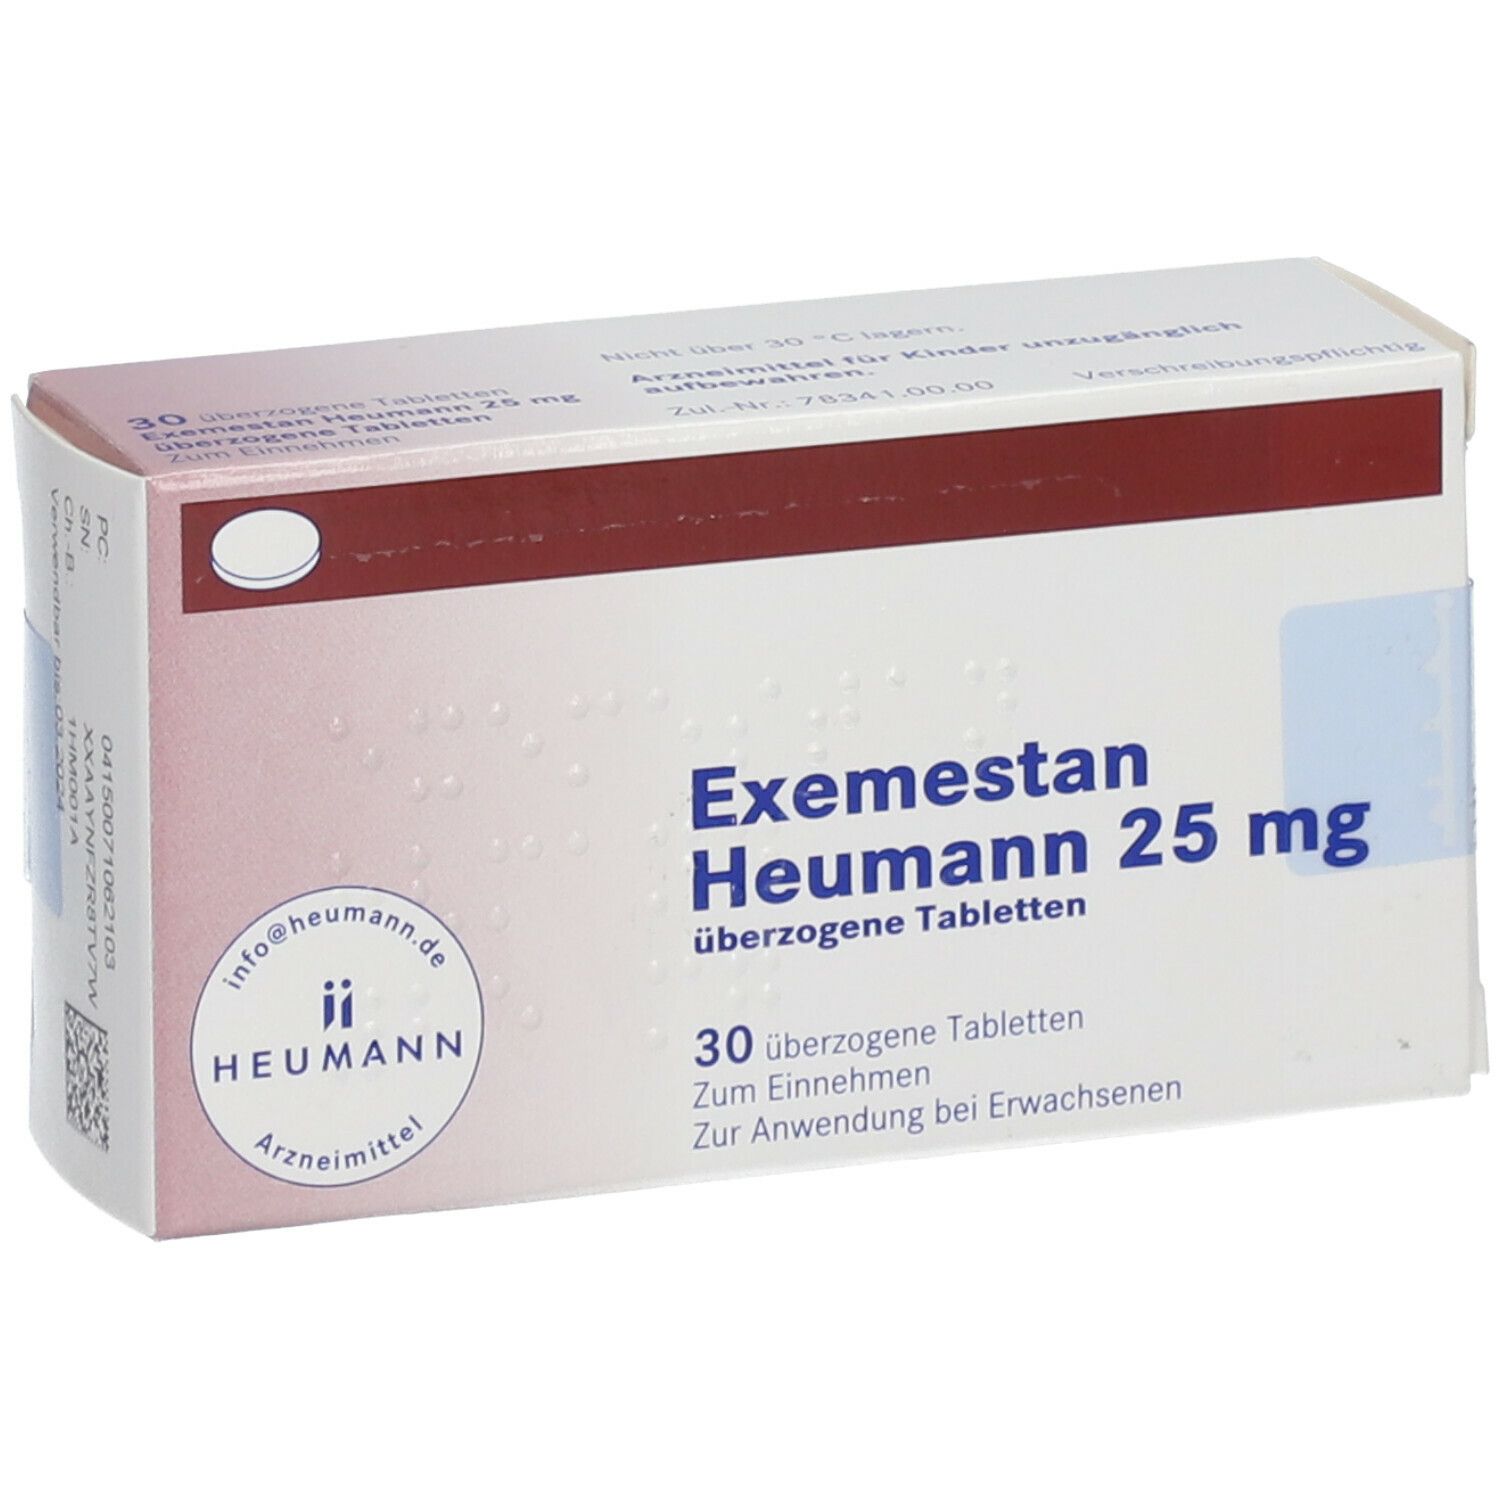 Exemestan Heumann 25 mg